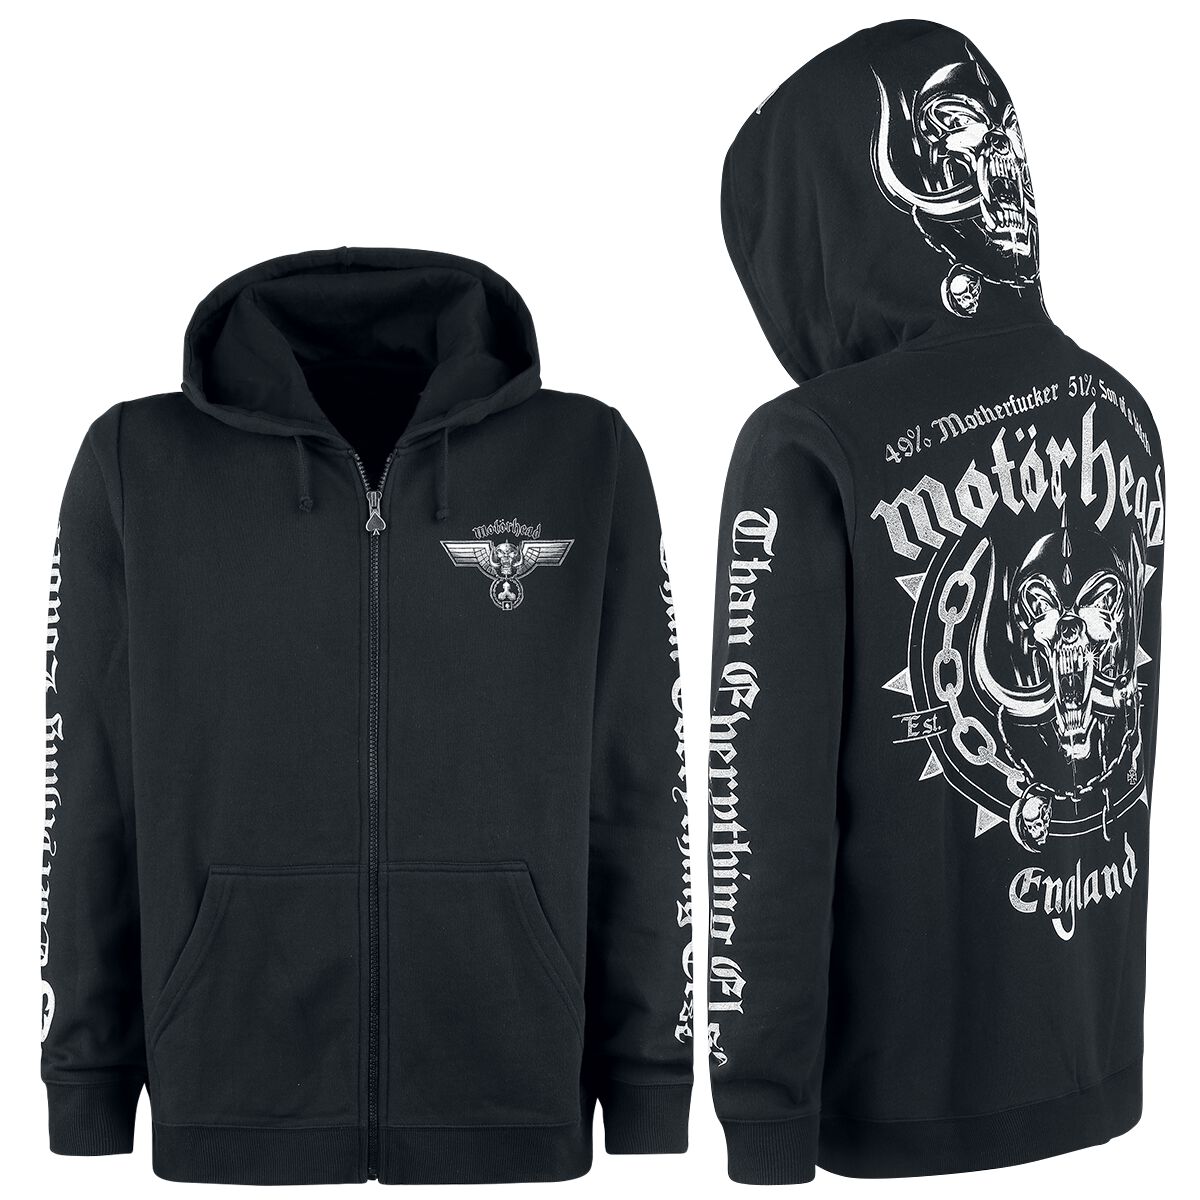 Motörhead Kapuzenjacke - England - M bis 3XL - für Männer - Größe XXL - schwarz  - EMP exklusives Merchandise!